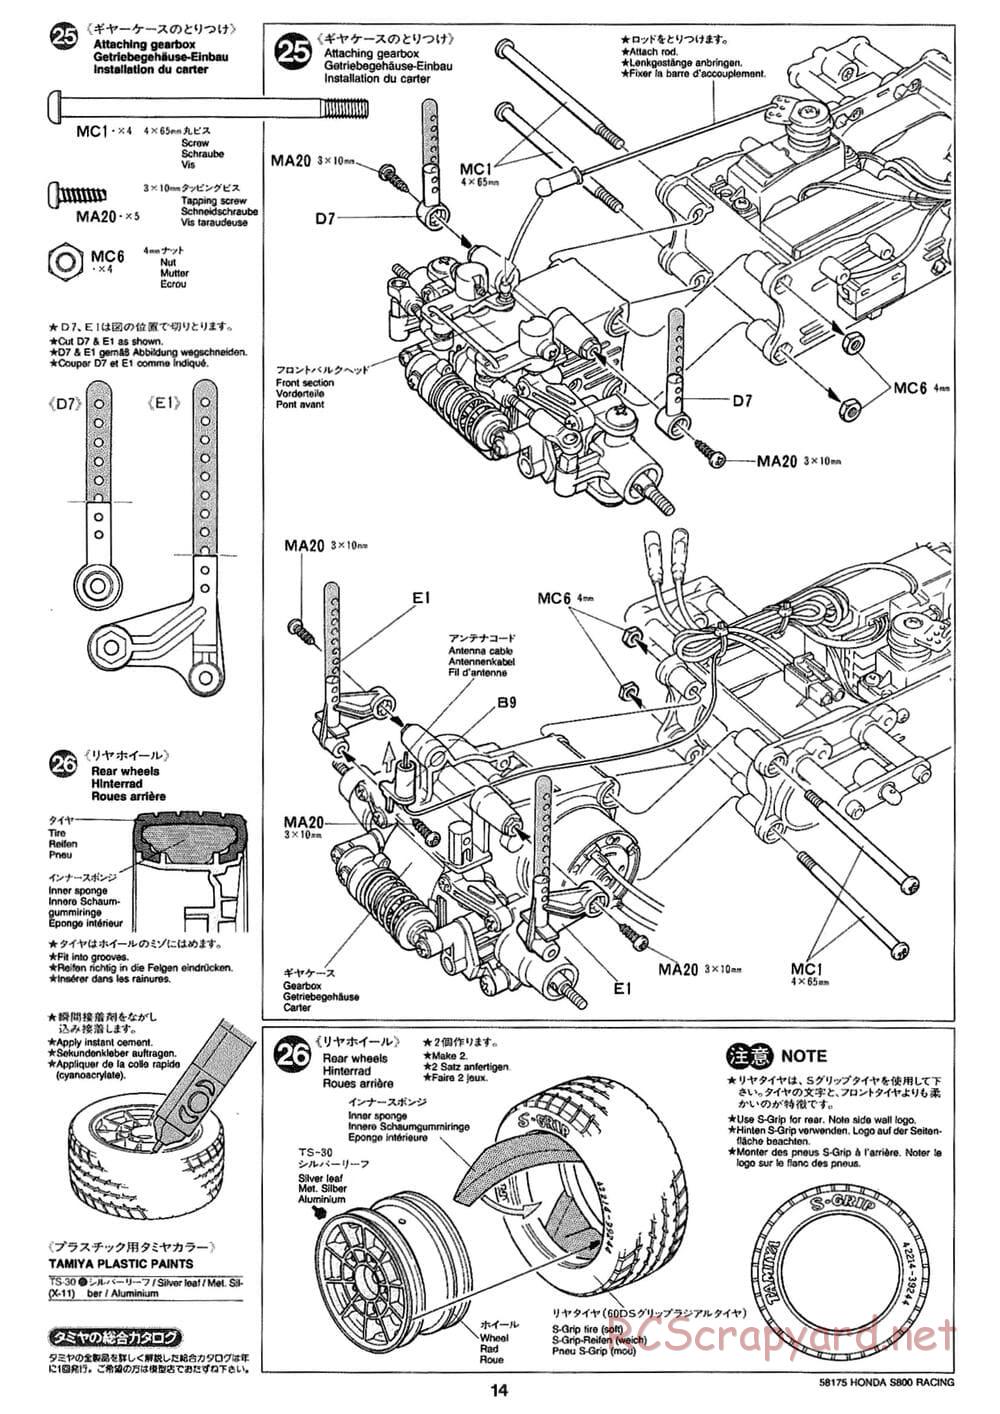 Tamiya - Honda S800 Racing - M02 Chassis - Manual - Page 14